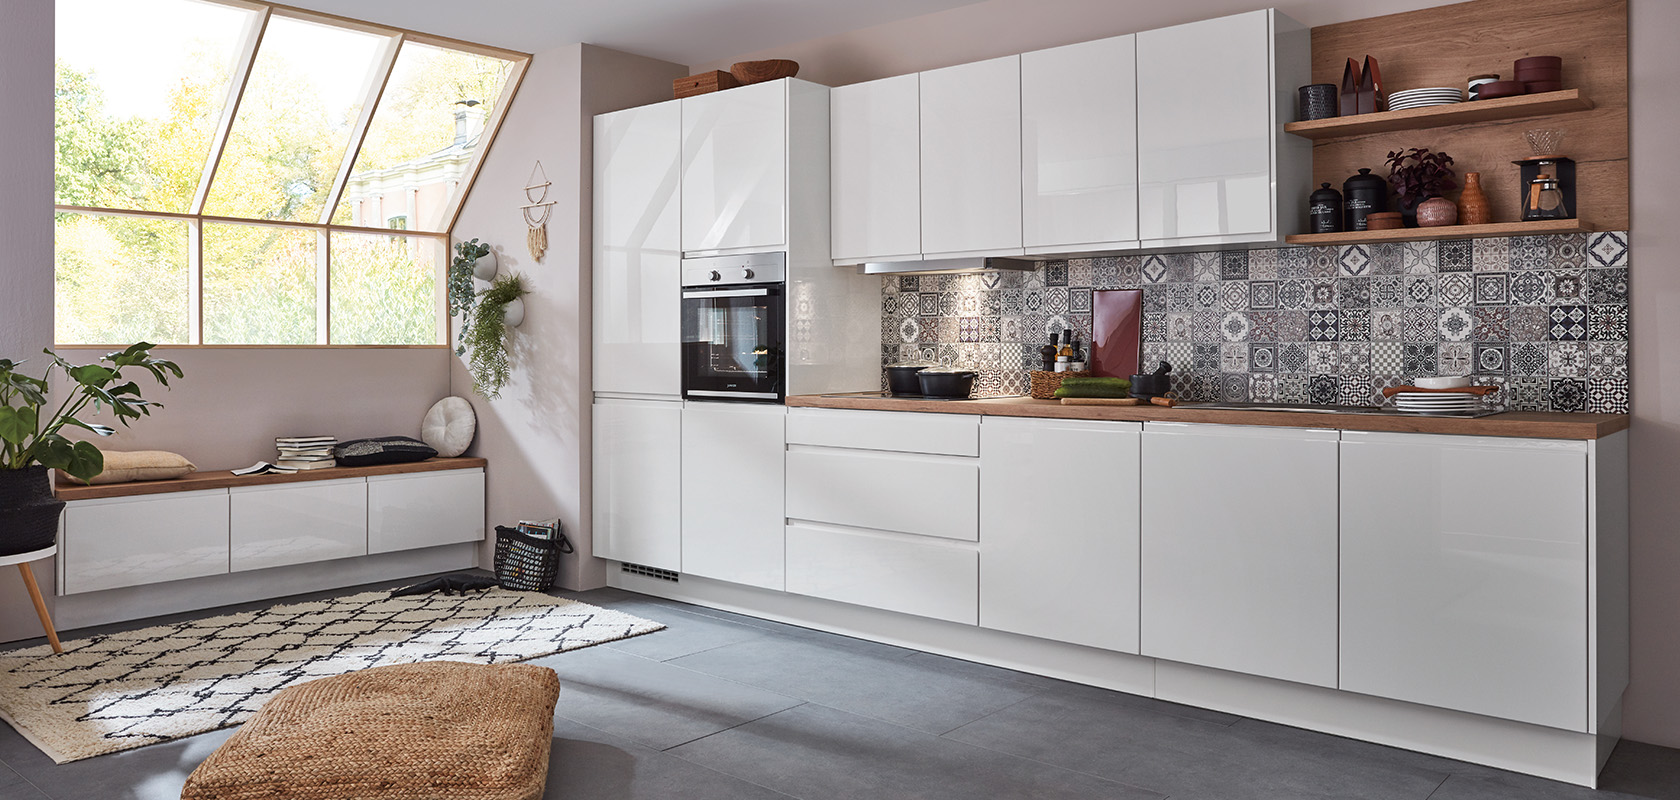 Moderne Kücheninnenräume mit sauberen weißen Schränken, geometrischen Fliesen als Rückwand und Holzdetails, die einen gemütlichen und dennoch stilvollen Koch- und Wohnbereich vermitteln.